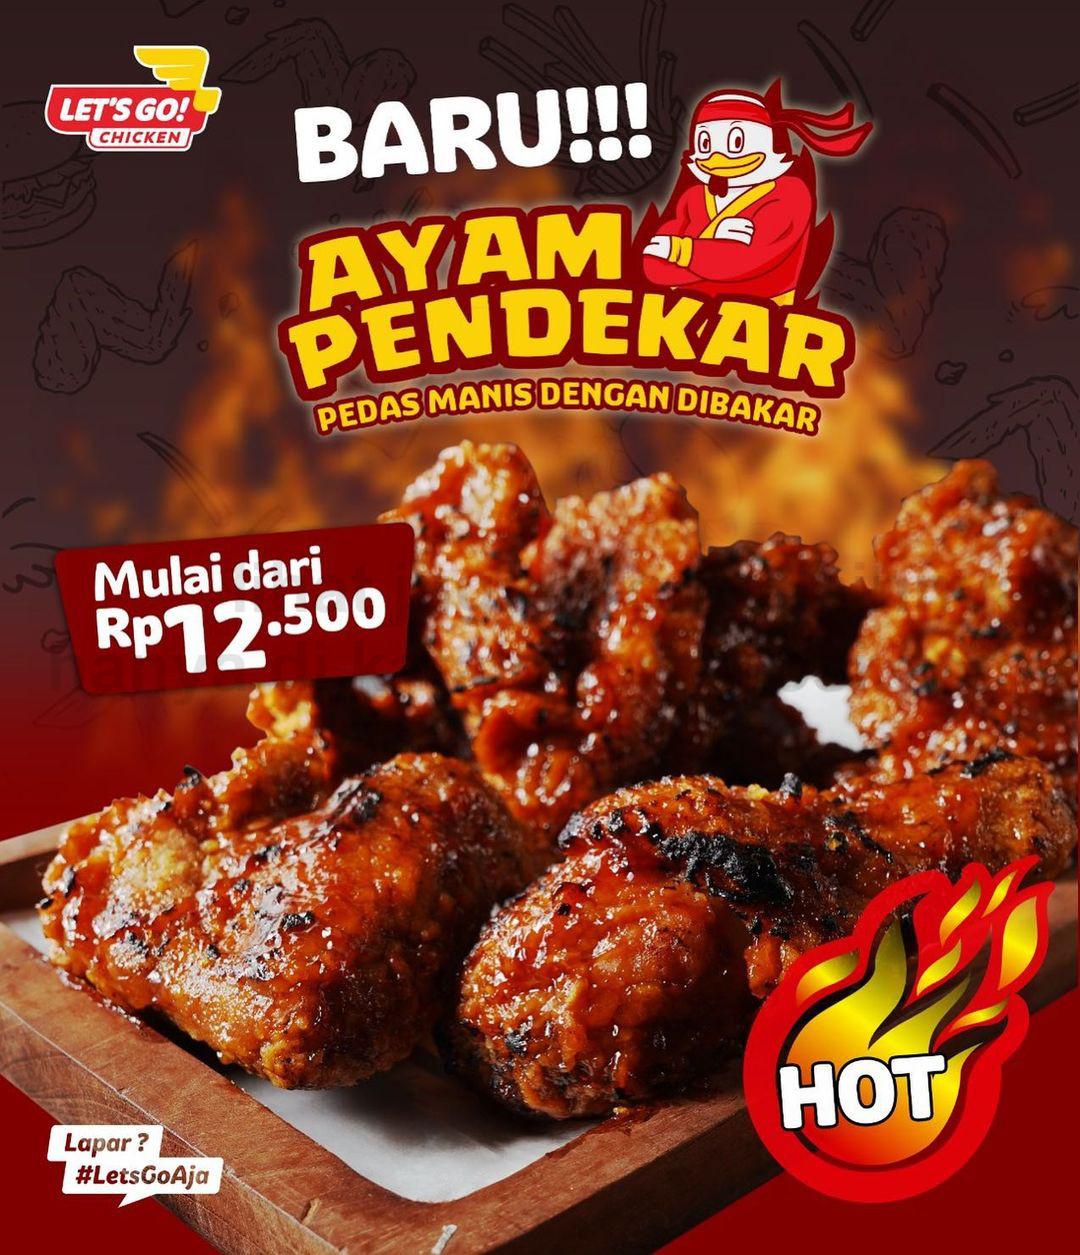 Promo LET'S GO! CHICKEN MENU BARU! Ayam Pendekar, Pedas Manis dengan Dibakar mulai Rp. 12.500